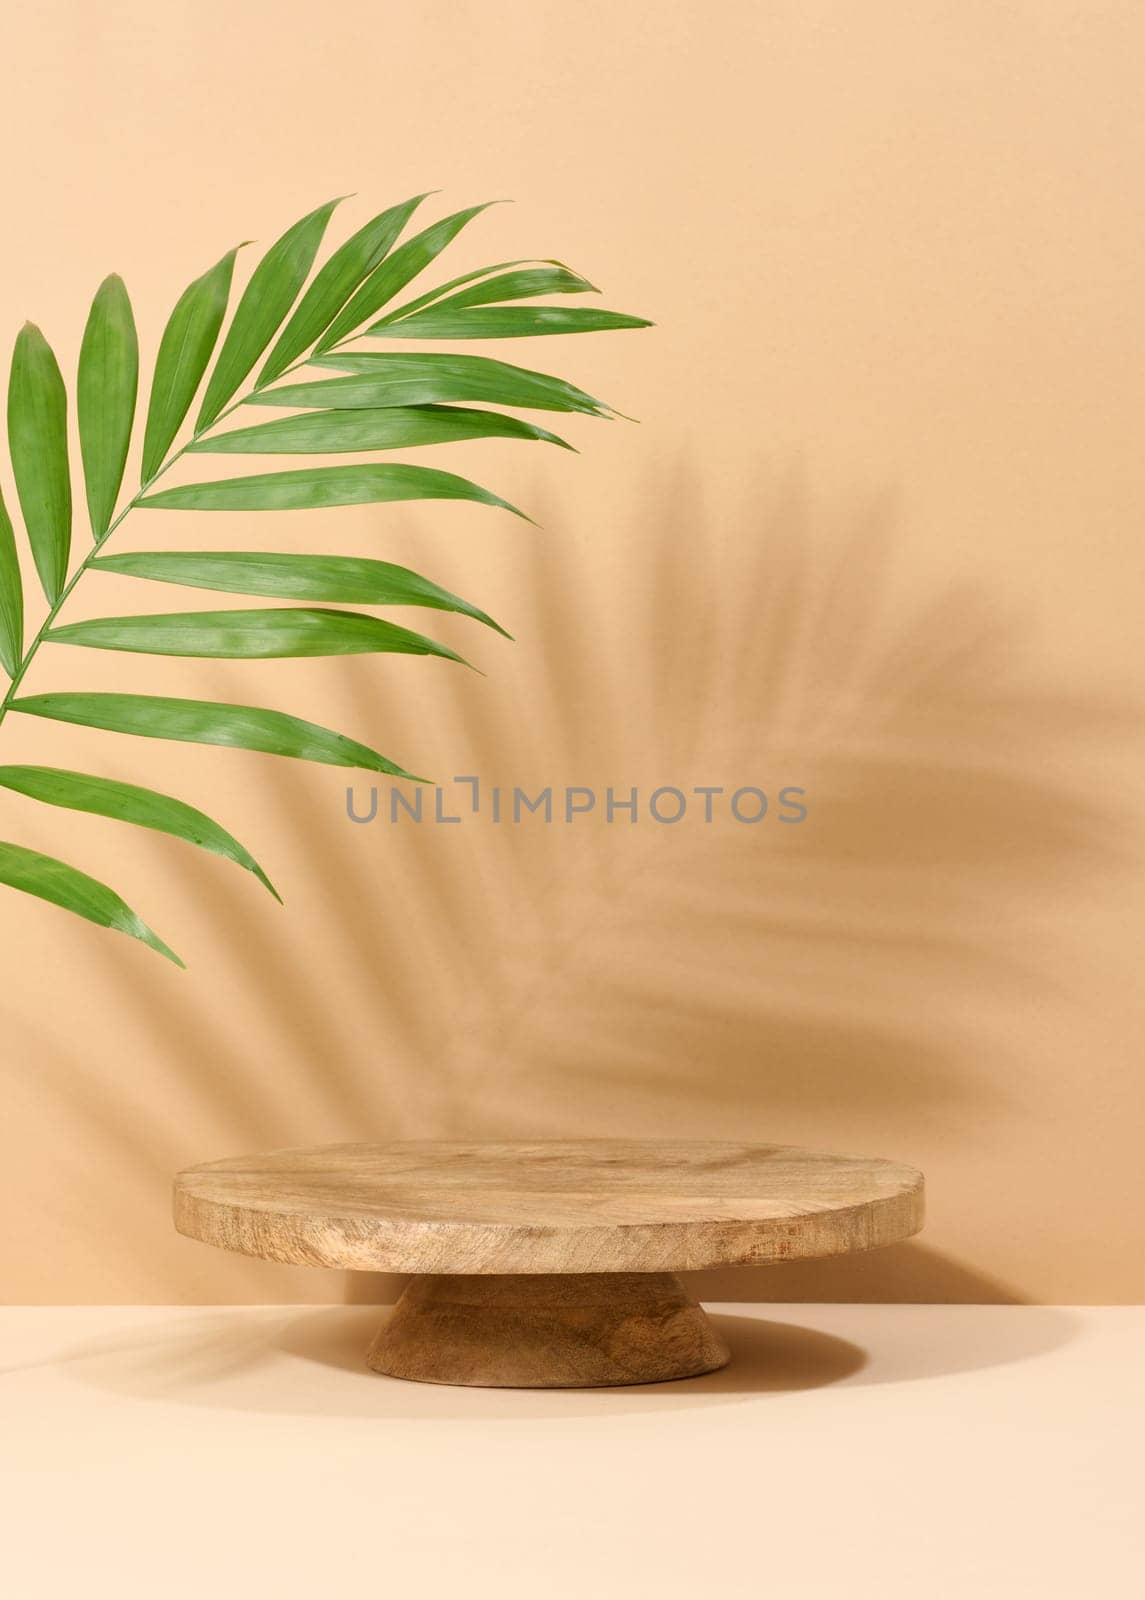 Round brown wooden stand on a beige background by ndanko